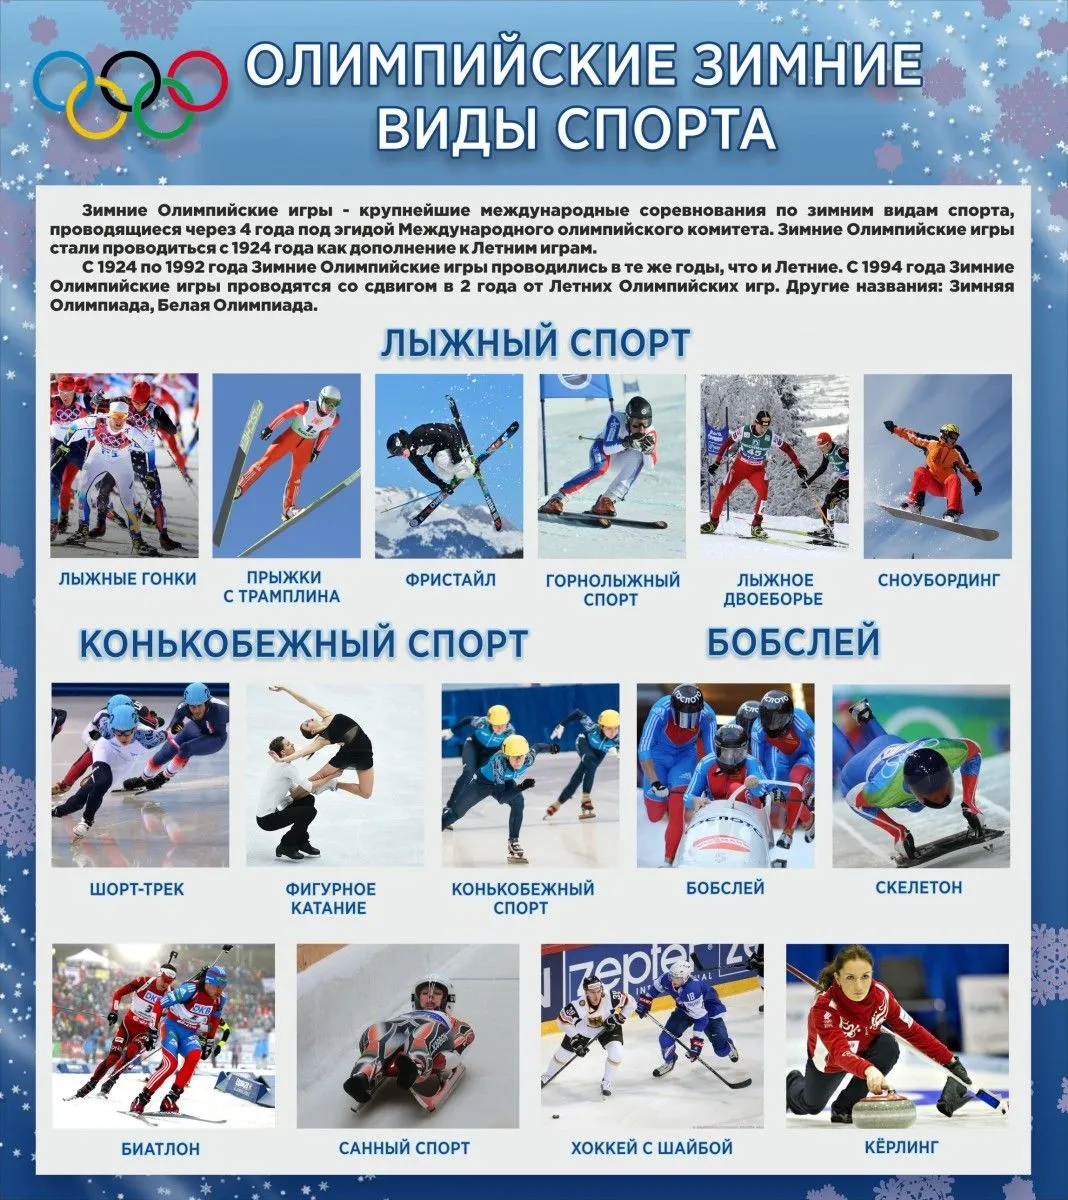 ГБУ ДО «Московская академия зимних видов спорта» - официальный сайт